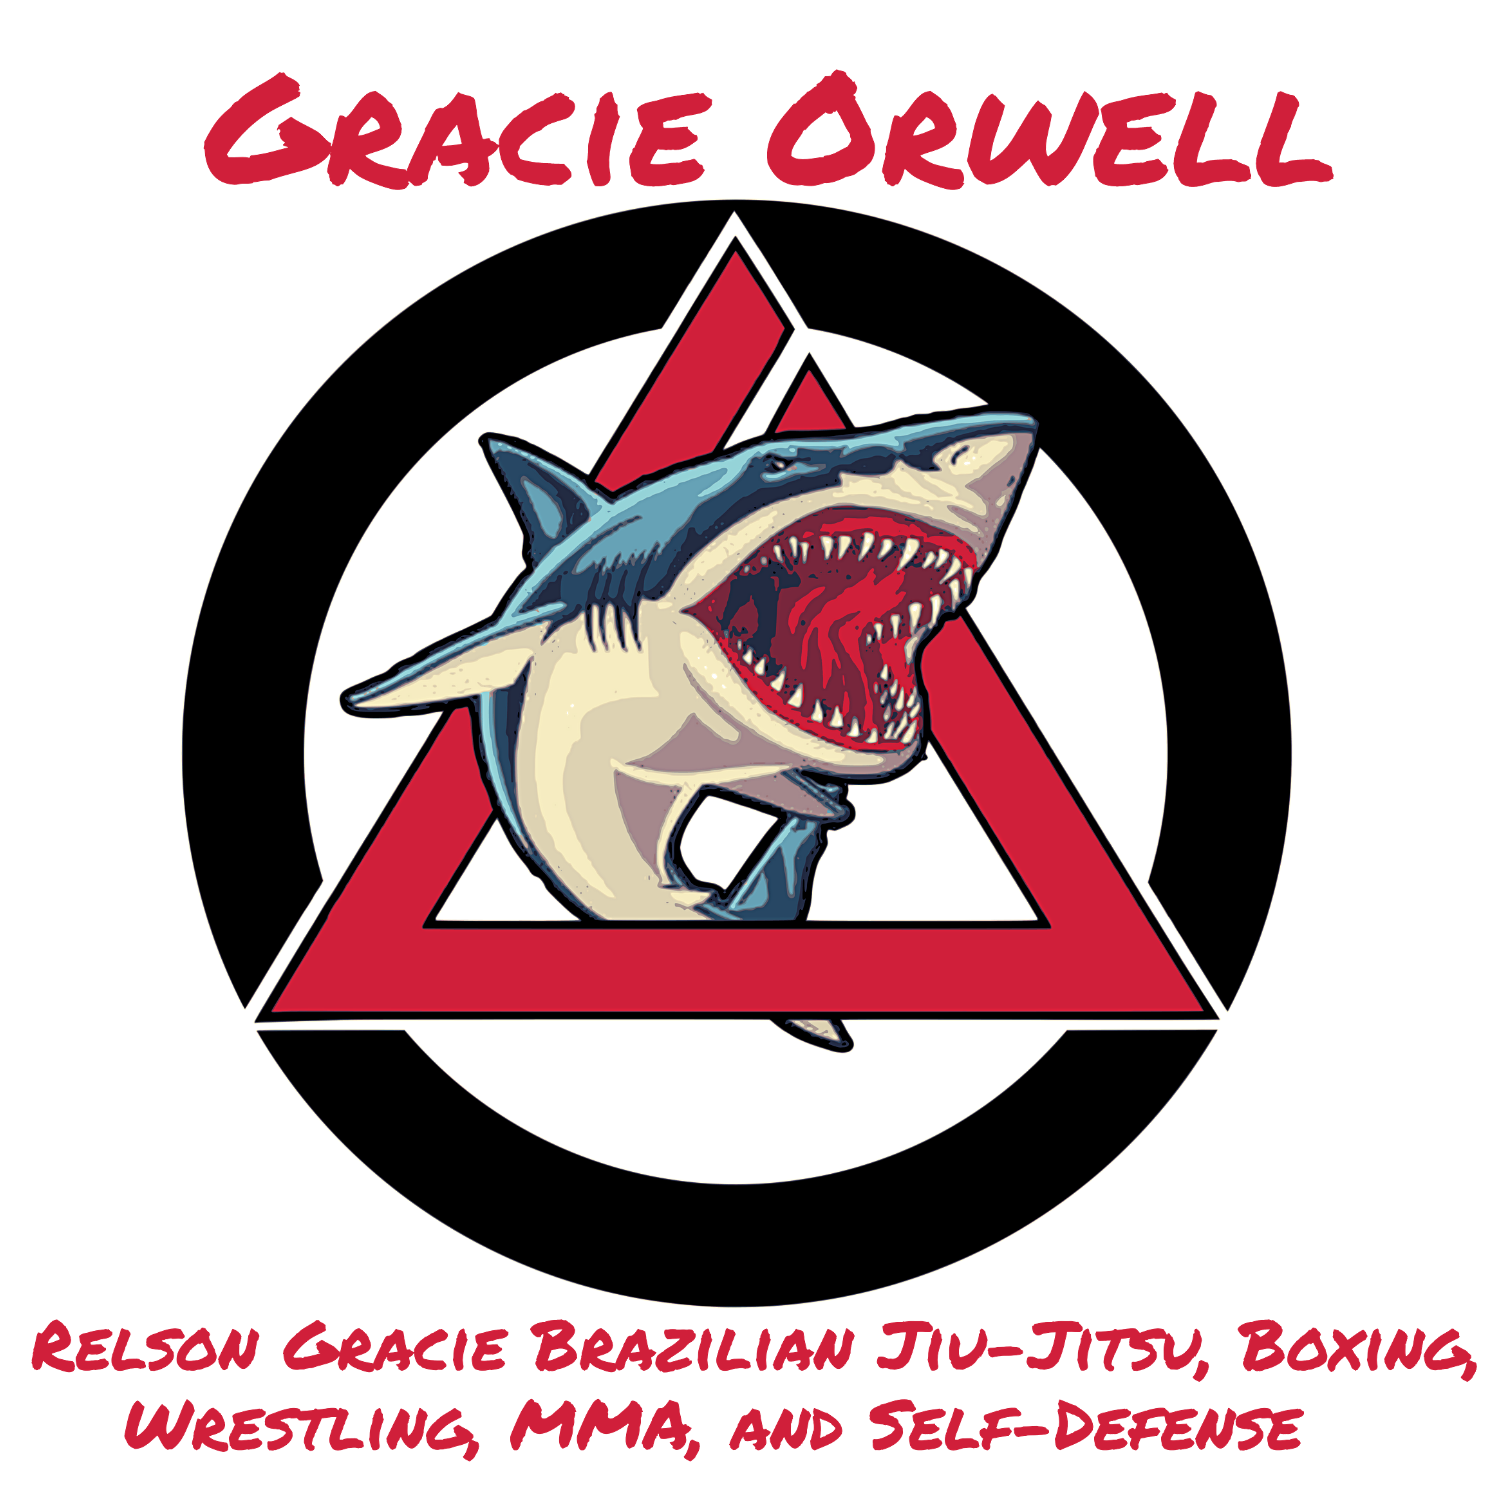 Gracie Orwell BJJ logo